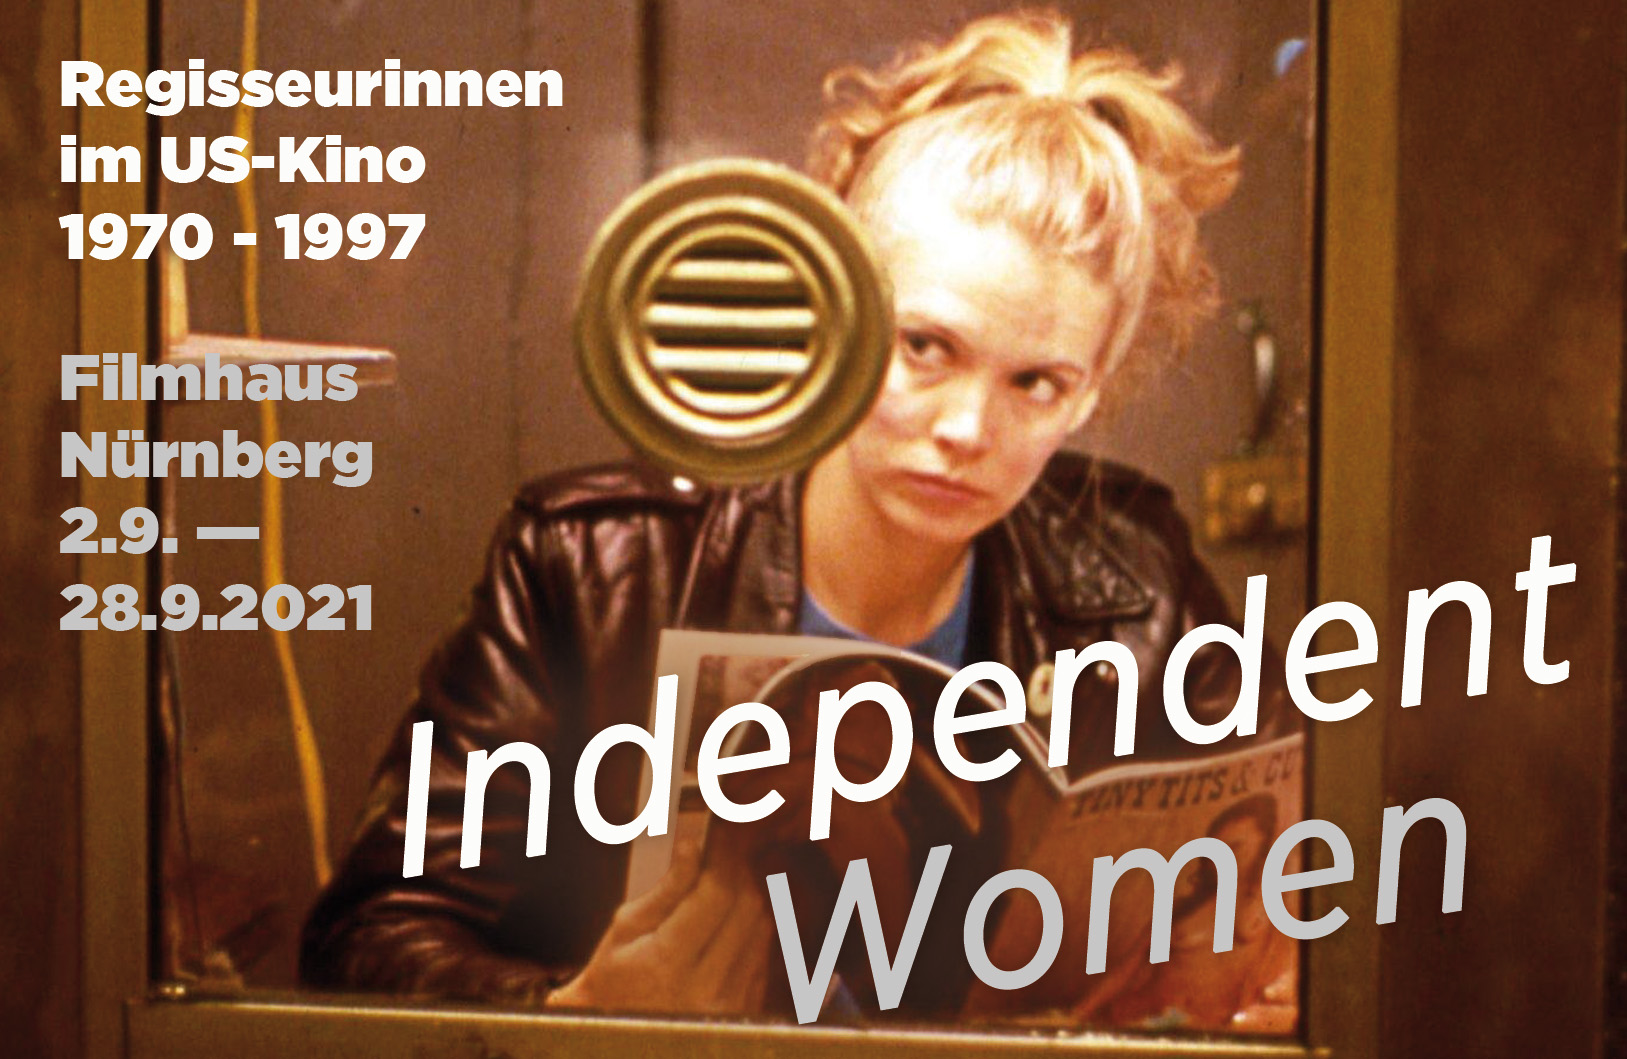 Titelmotiv der Filmreihe Independent Women